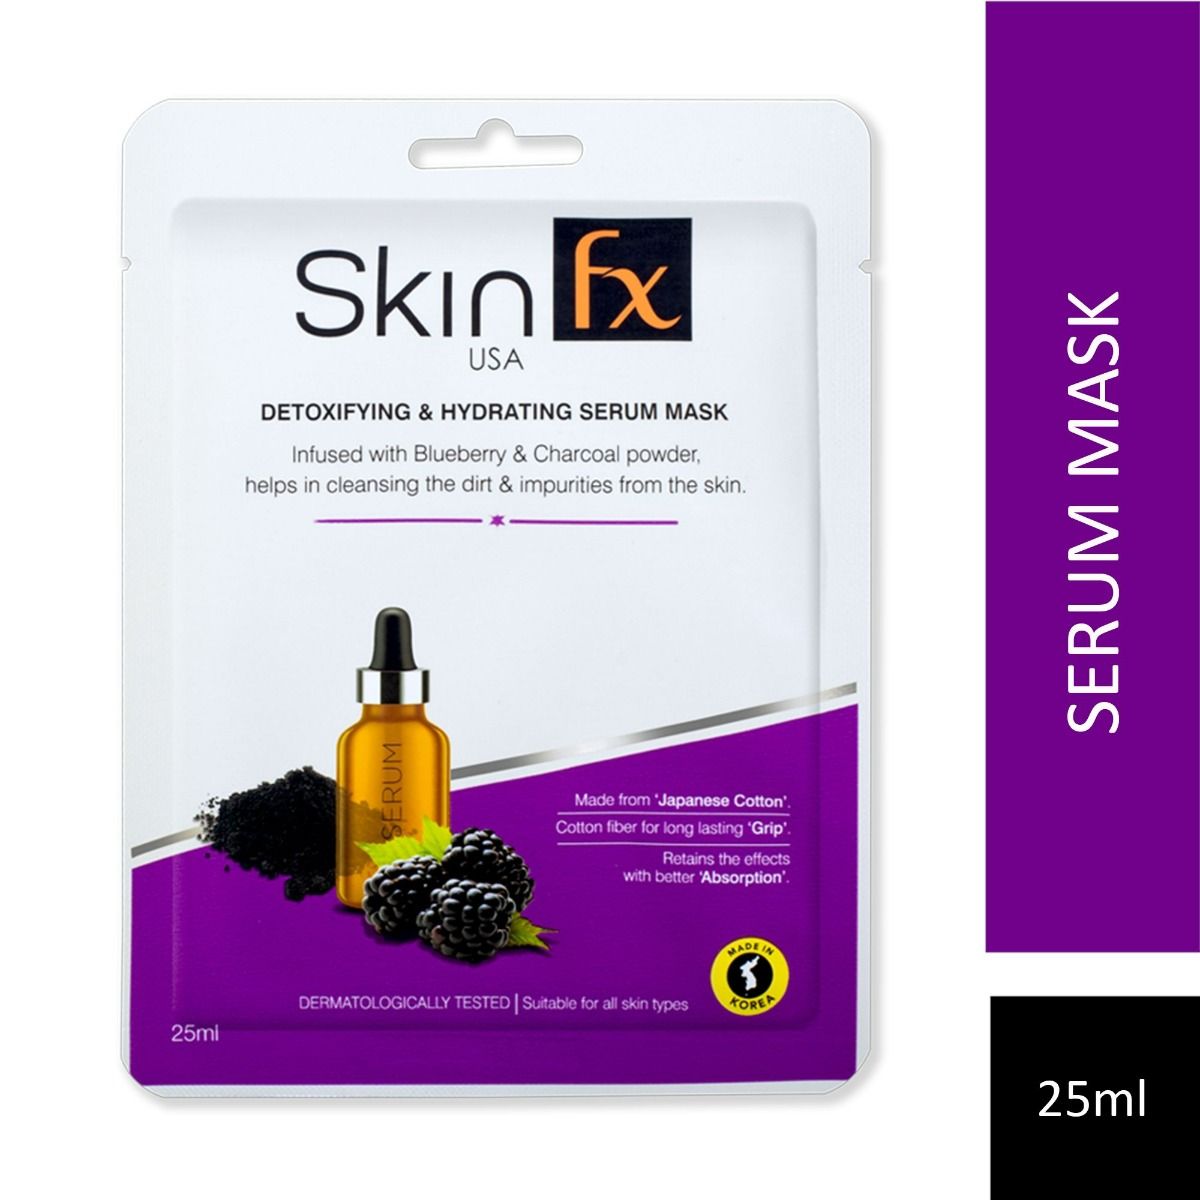 Buy Skin Fx Detoxifying & Hydrating Serum Mask, 25 ml Online